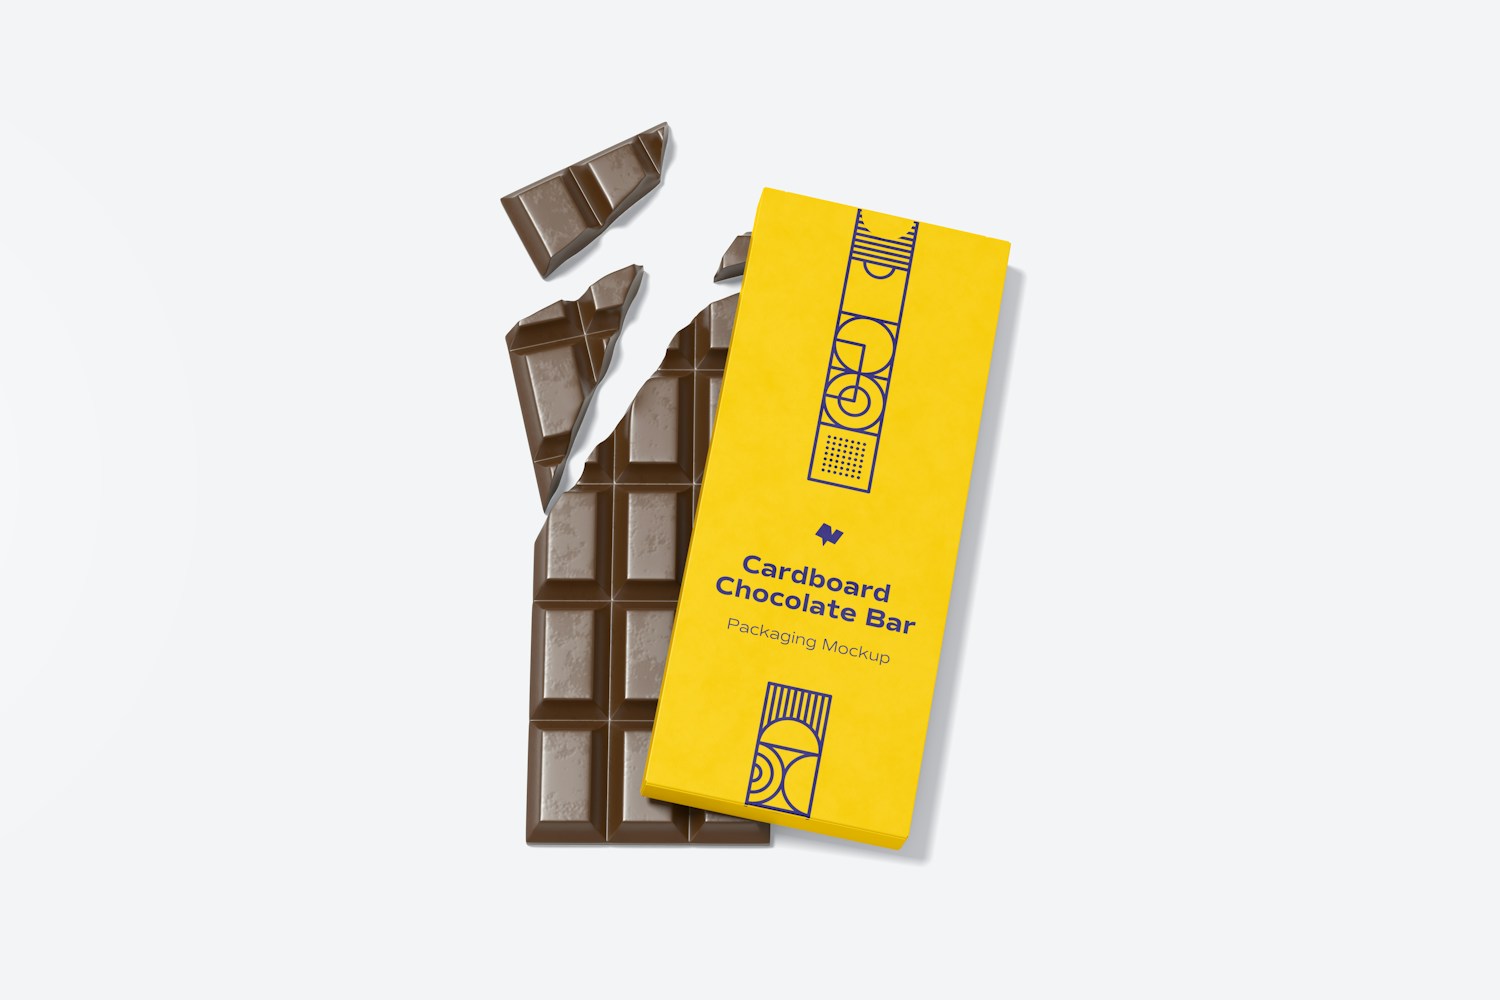 Cardboard Chocolate Bar Packaging Mockup, Top View